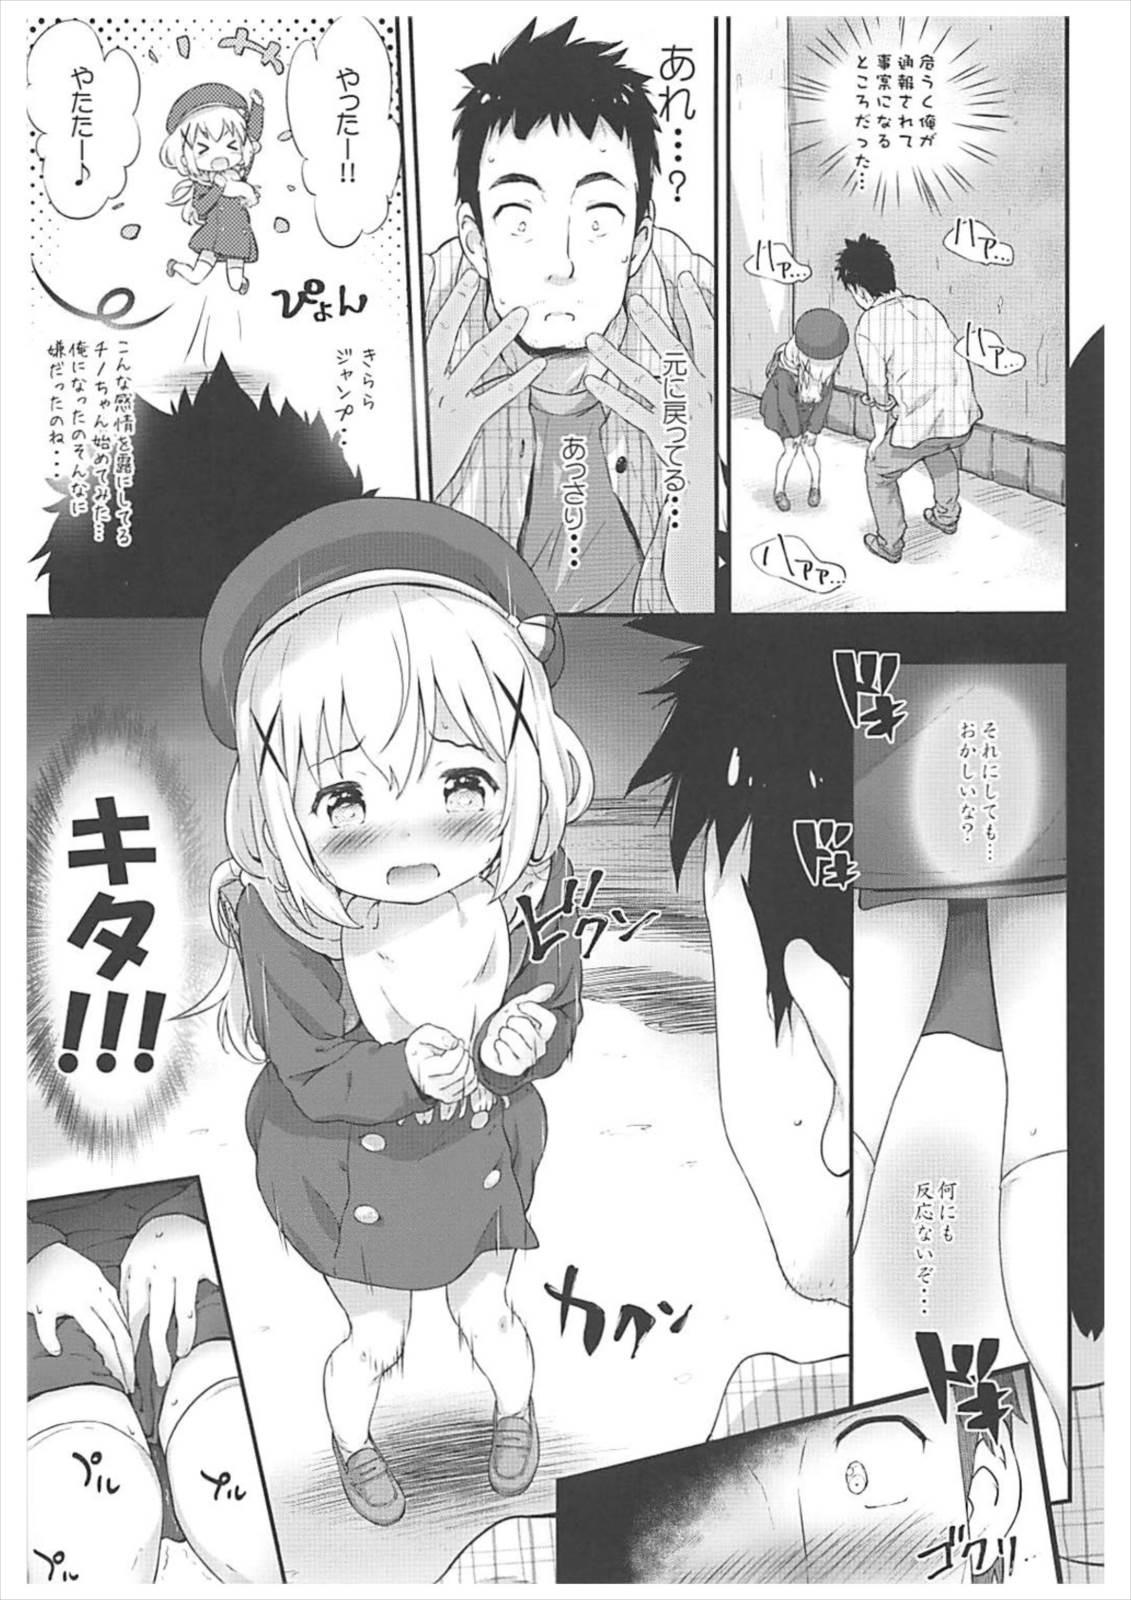 Anus Toro Musume 14 Chino-chan Hajimemashita 2 kai - Gochuumon wa usagi desu ka Family - Page 6